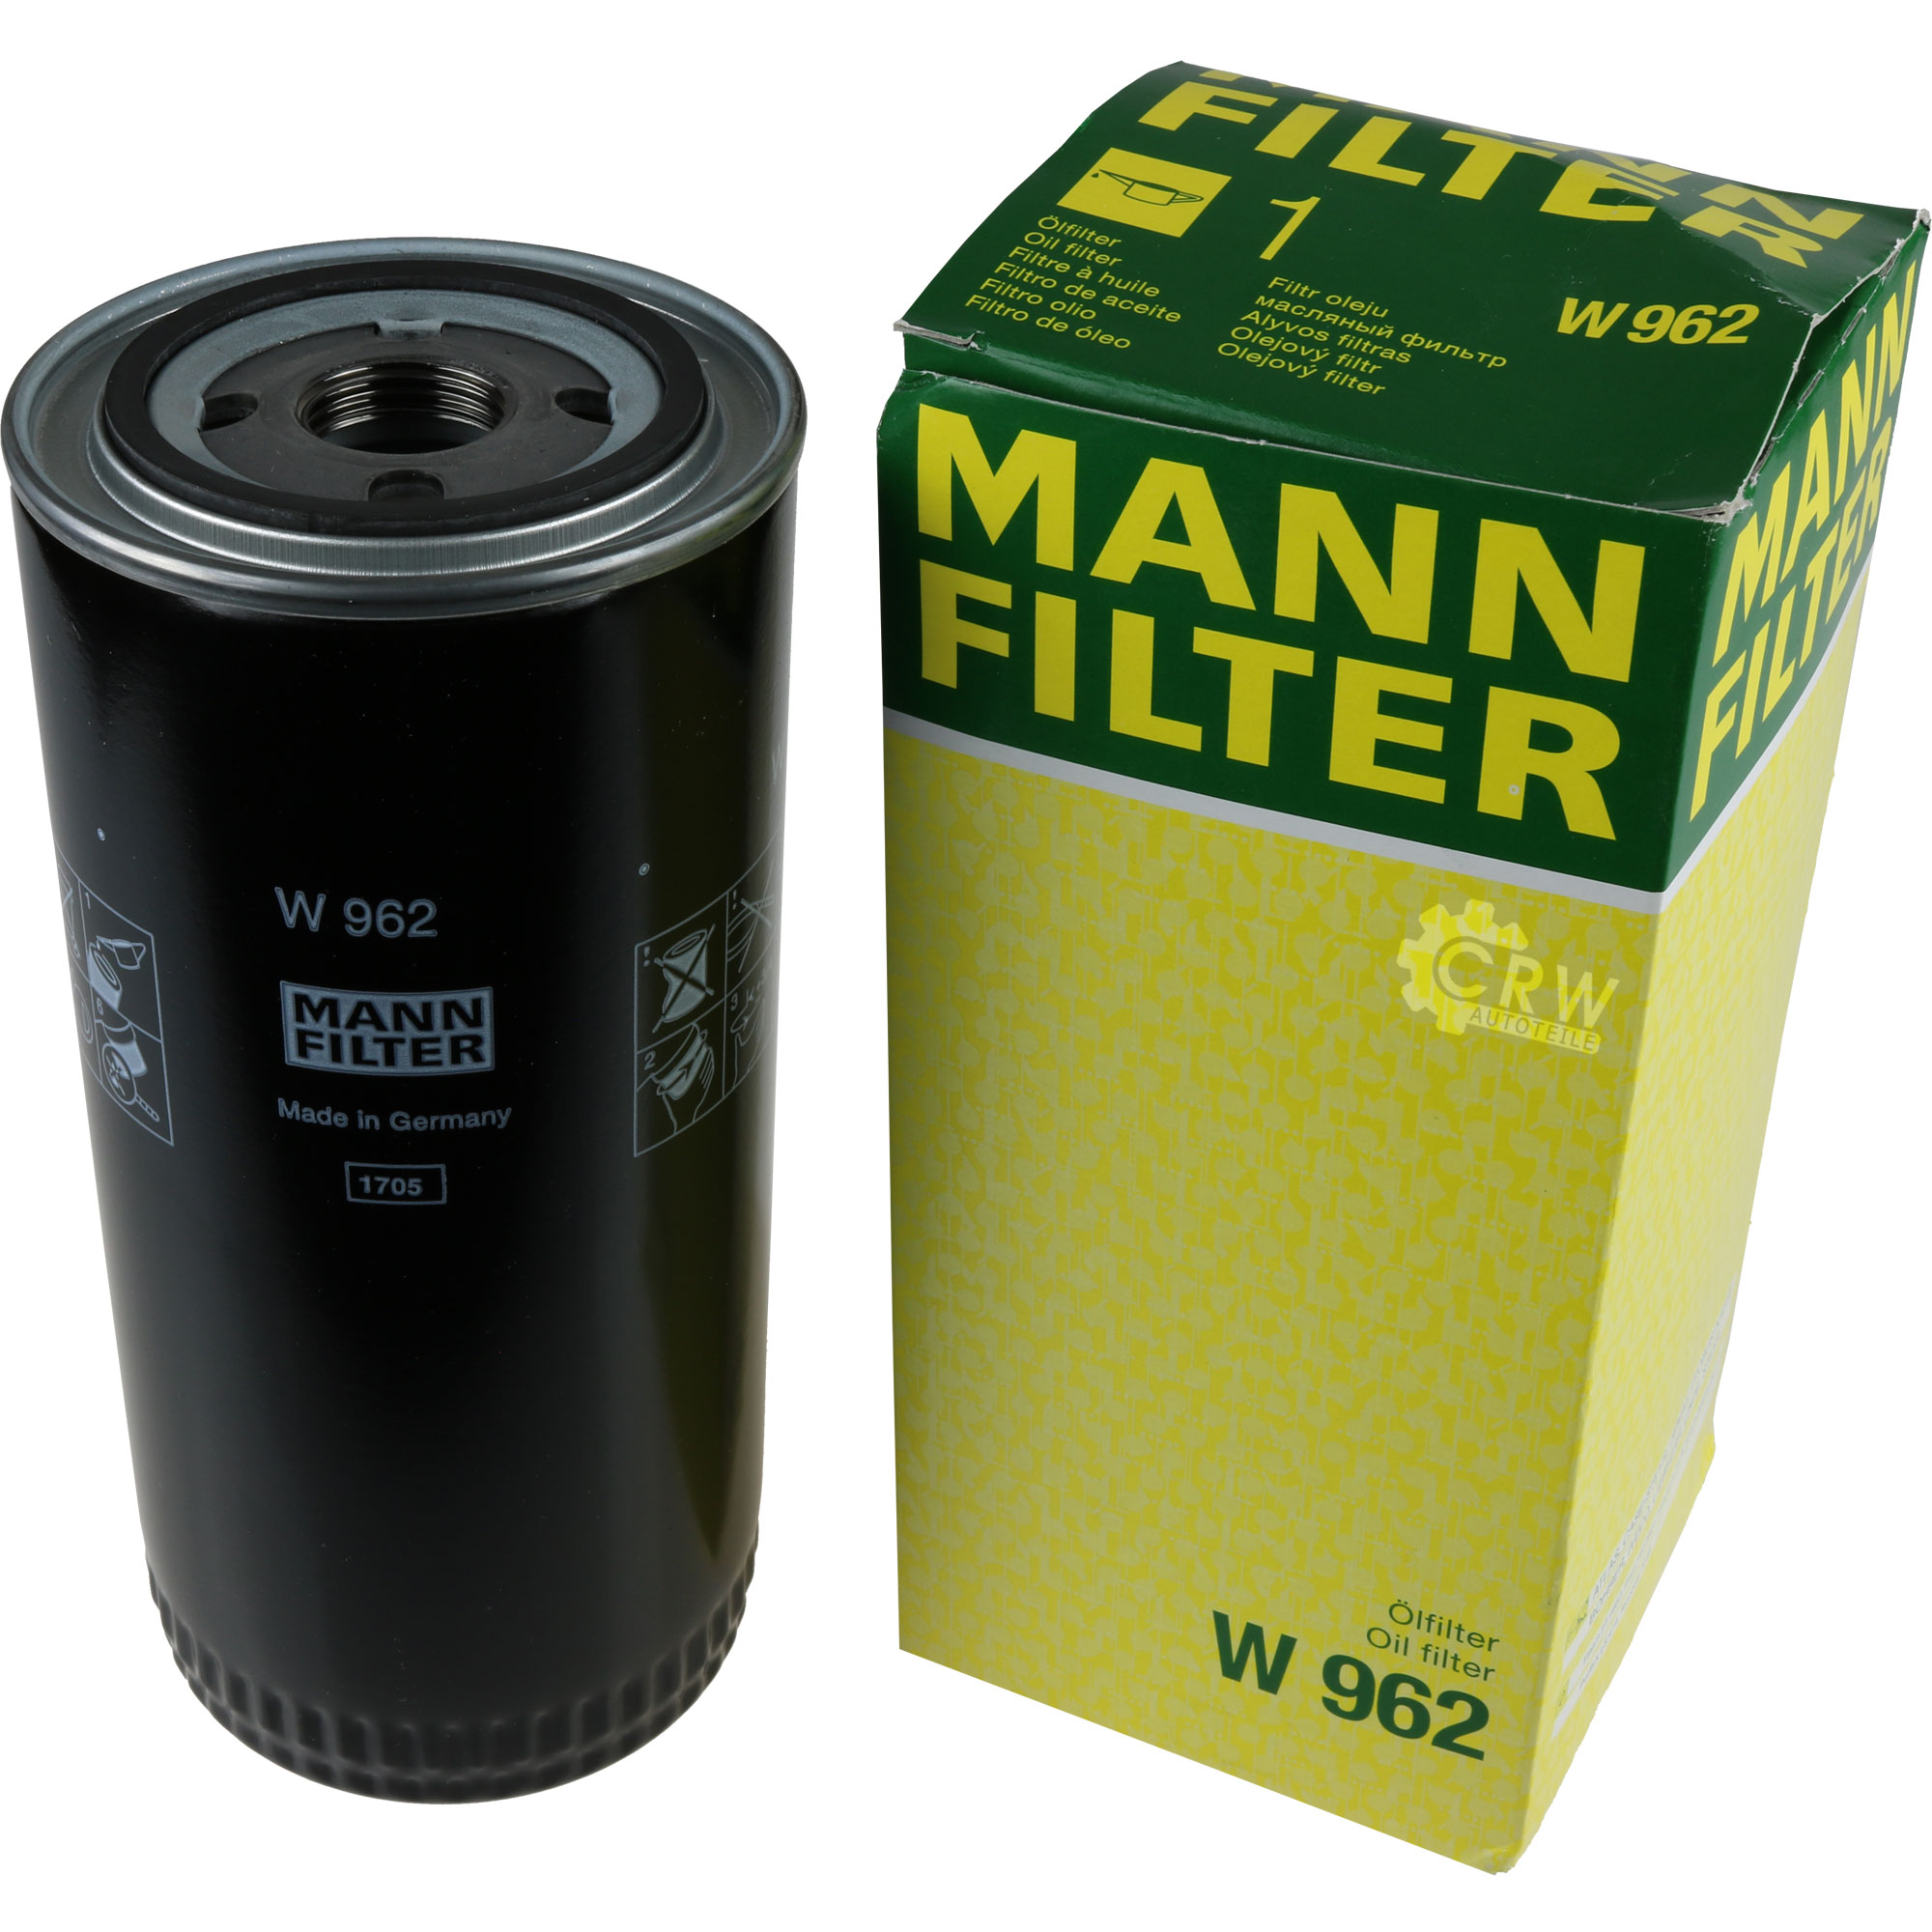 MANN-FILTER Ölfilter Hydraulikfilter für Automatikgetriebe W 962